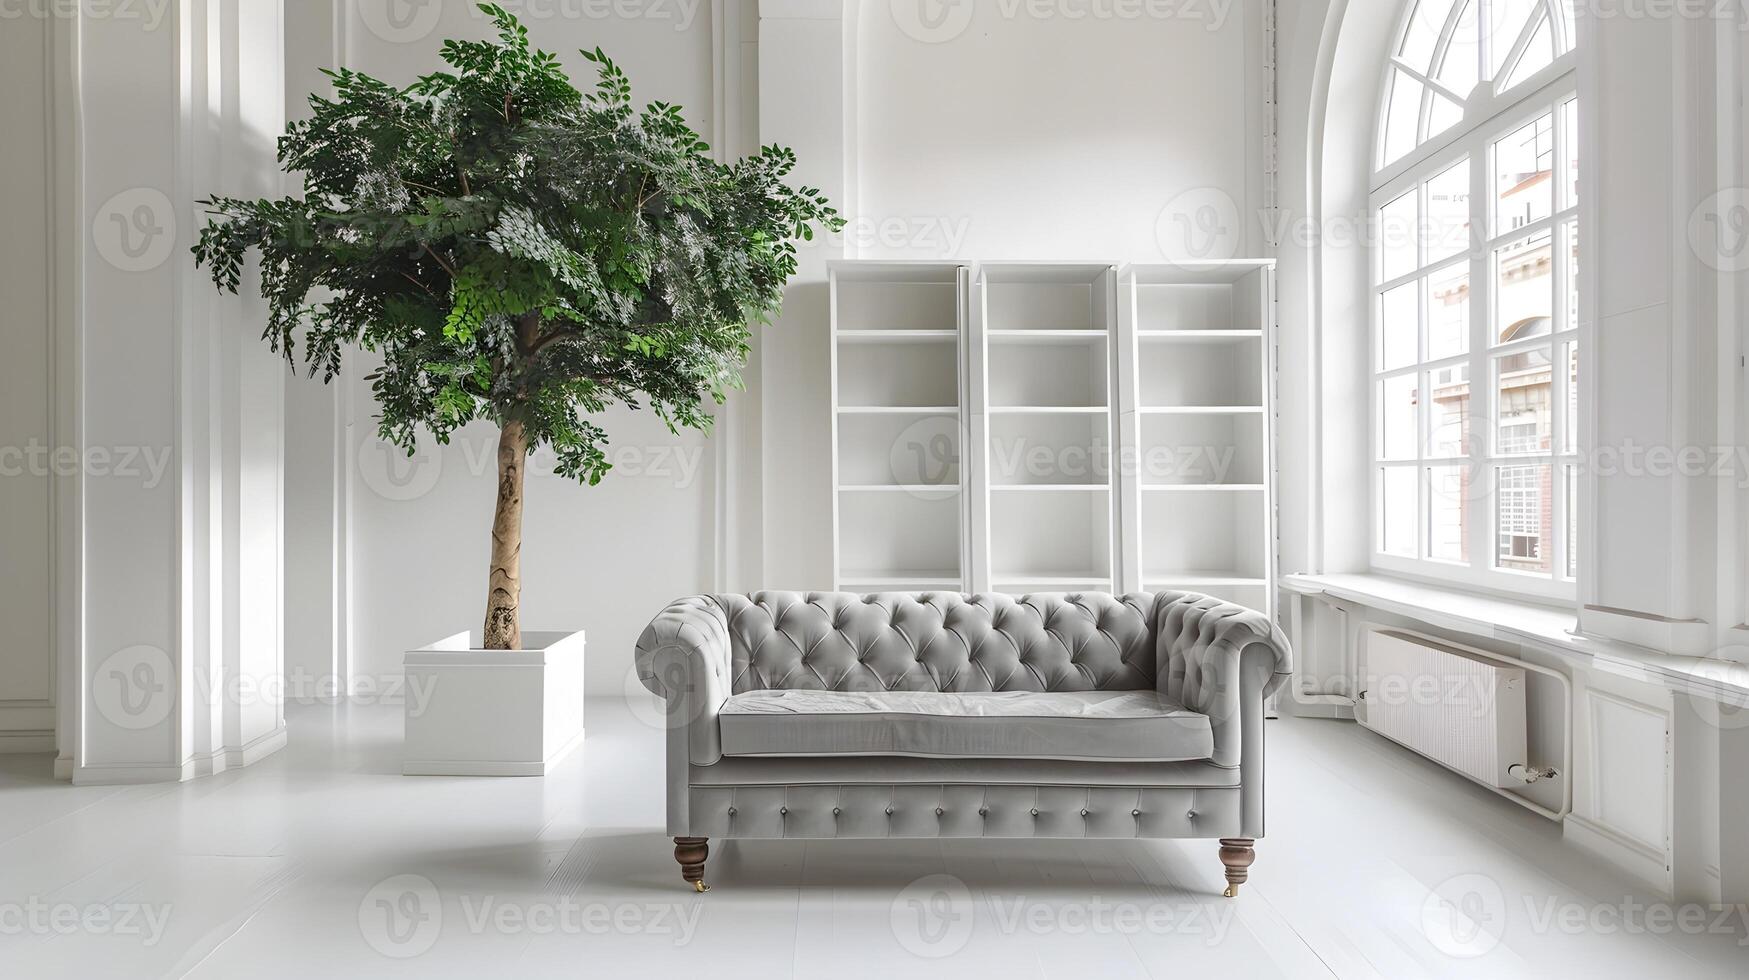 élégant et serein vivant pièce avec luxuriant botanique accents dans une lumineux, minimaliste intérieur conception photo